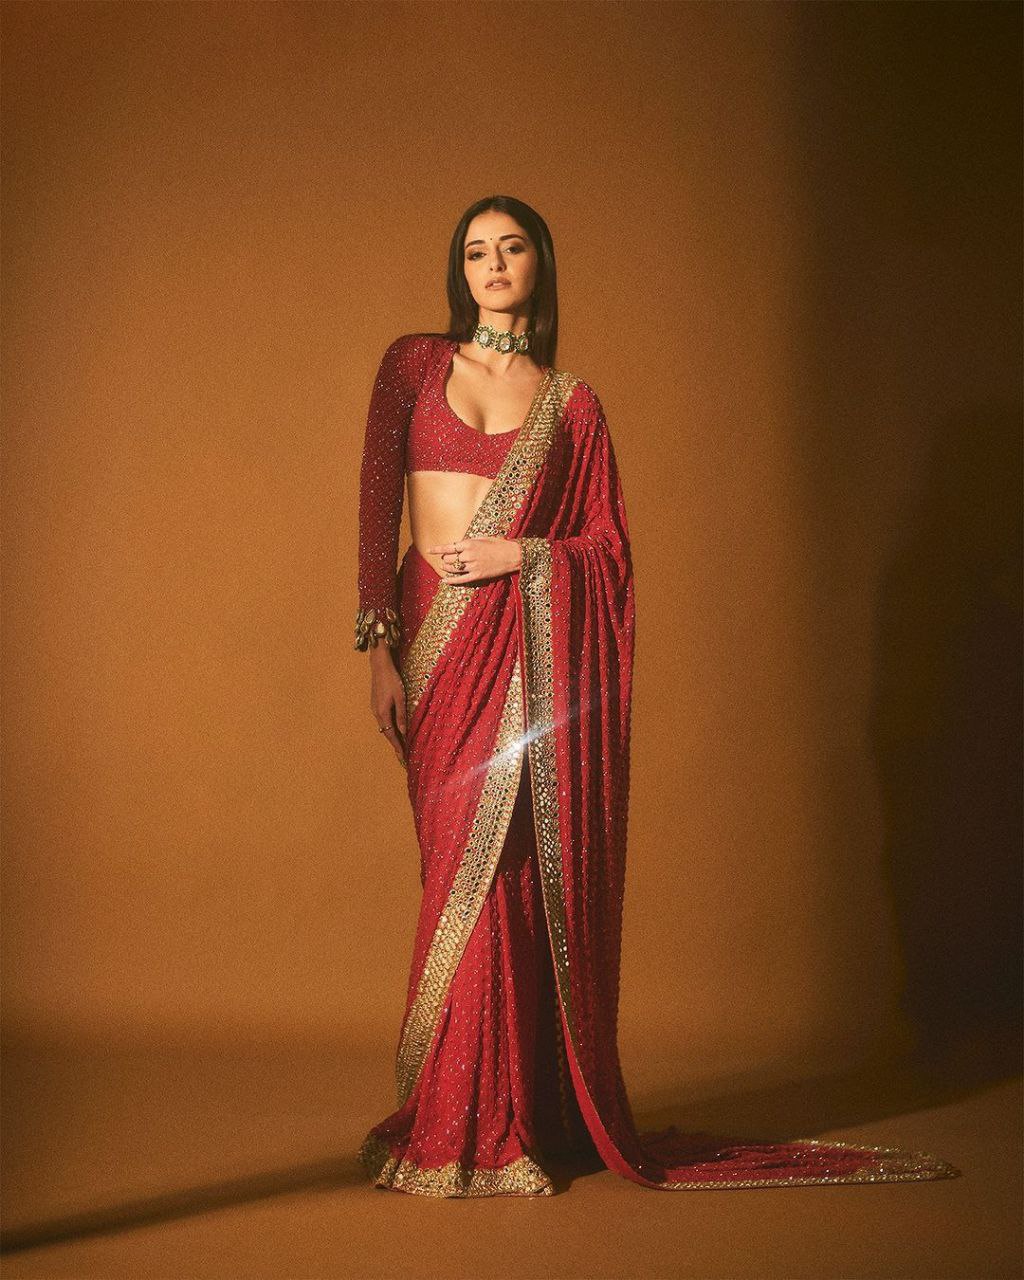 Ananya Pandey Inspired Hot Red Saree